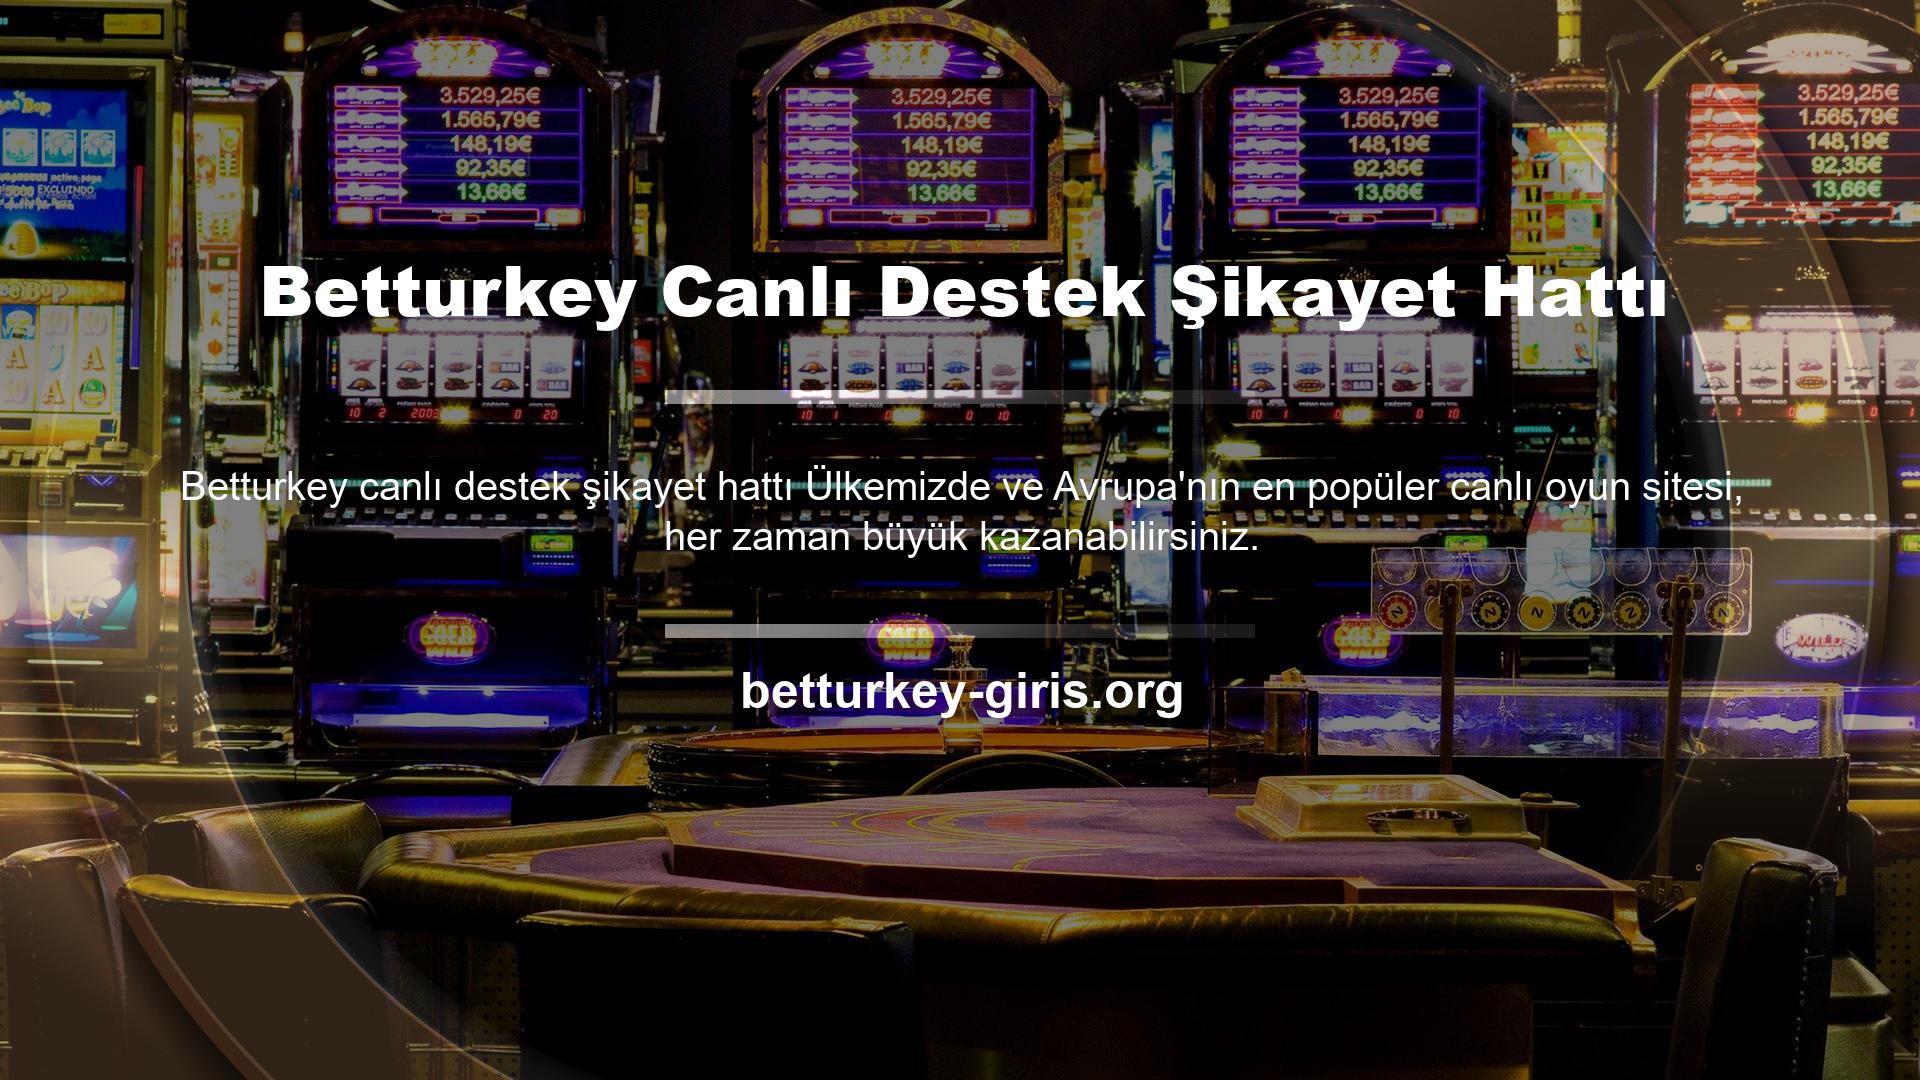 Üyeliğiniz sonrasında Betturkey Şikayet sayfası üzerinden destek almak isterseniz, bu amaçla Türkiye'deki müşteri destek temsilcilerimiz ile iletişime geçebilirsiniz